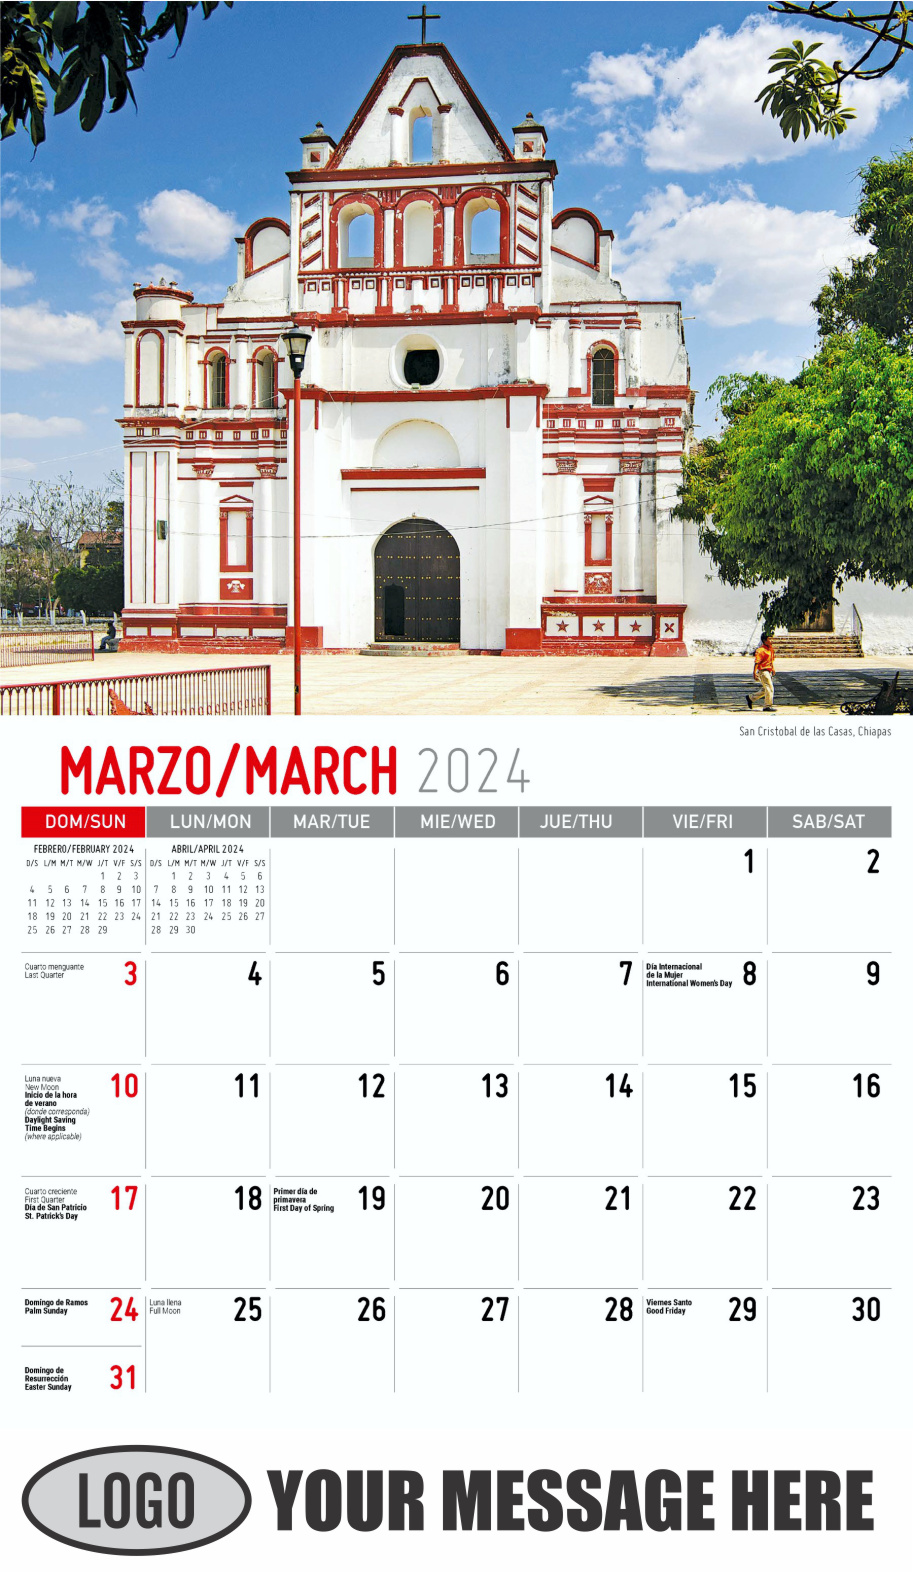 Scenes of Mexico 2024 Bilingual Business Promo Calendar - March